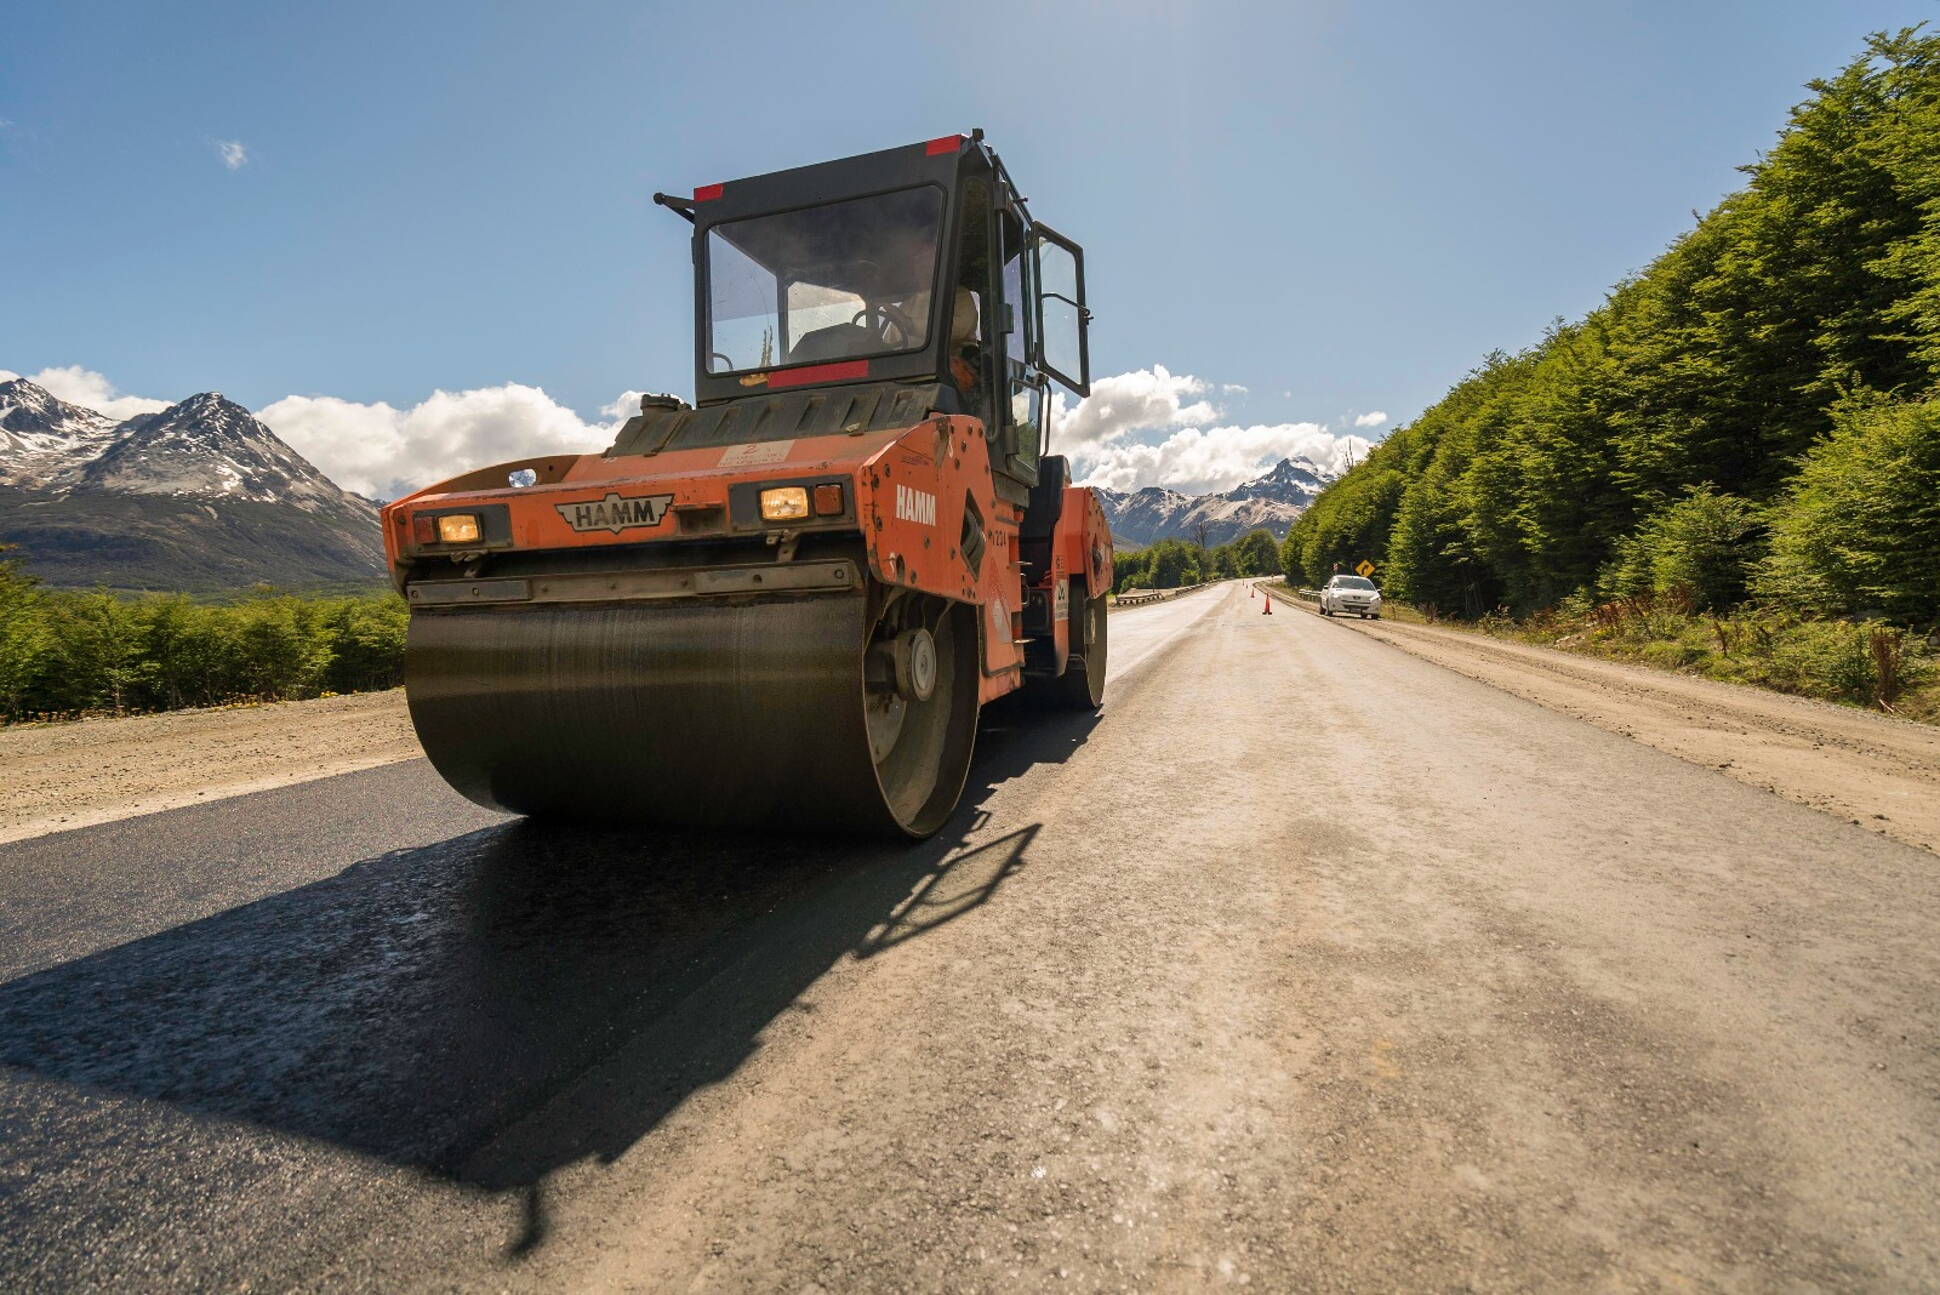 Reiniciaron la repavimentación de la Ruta Nacional 3 en Tierra del Fuego